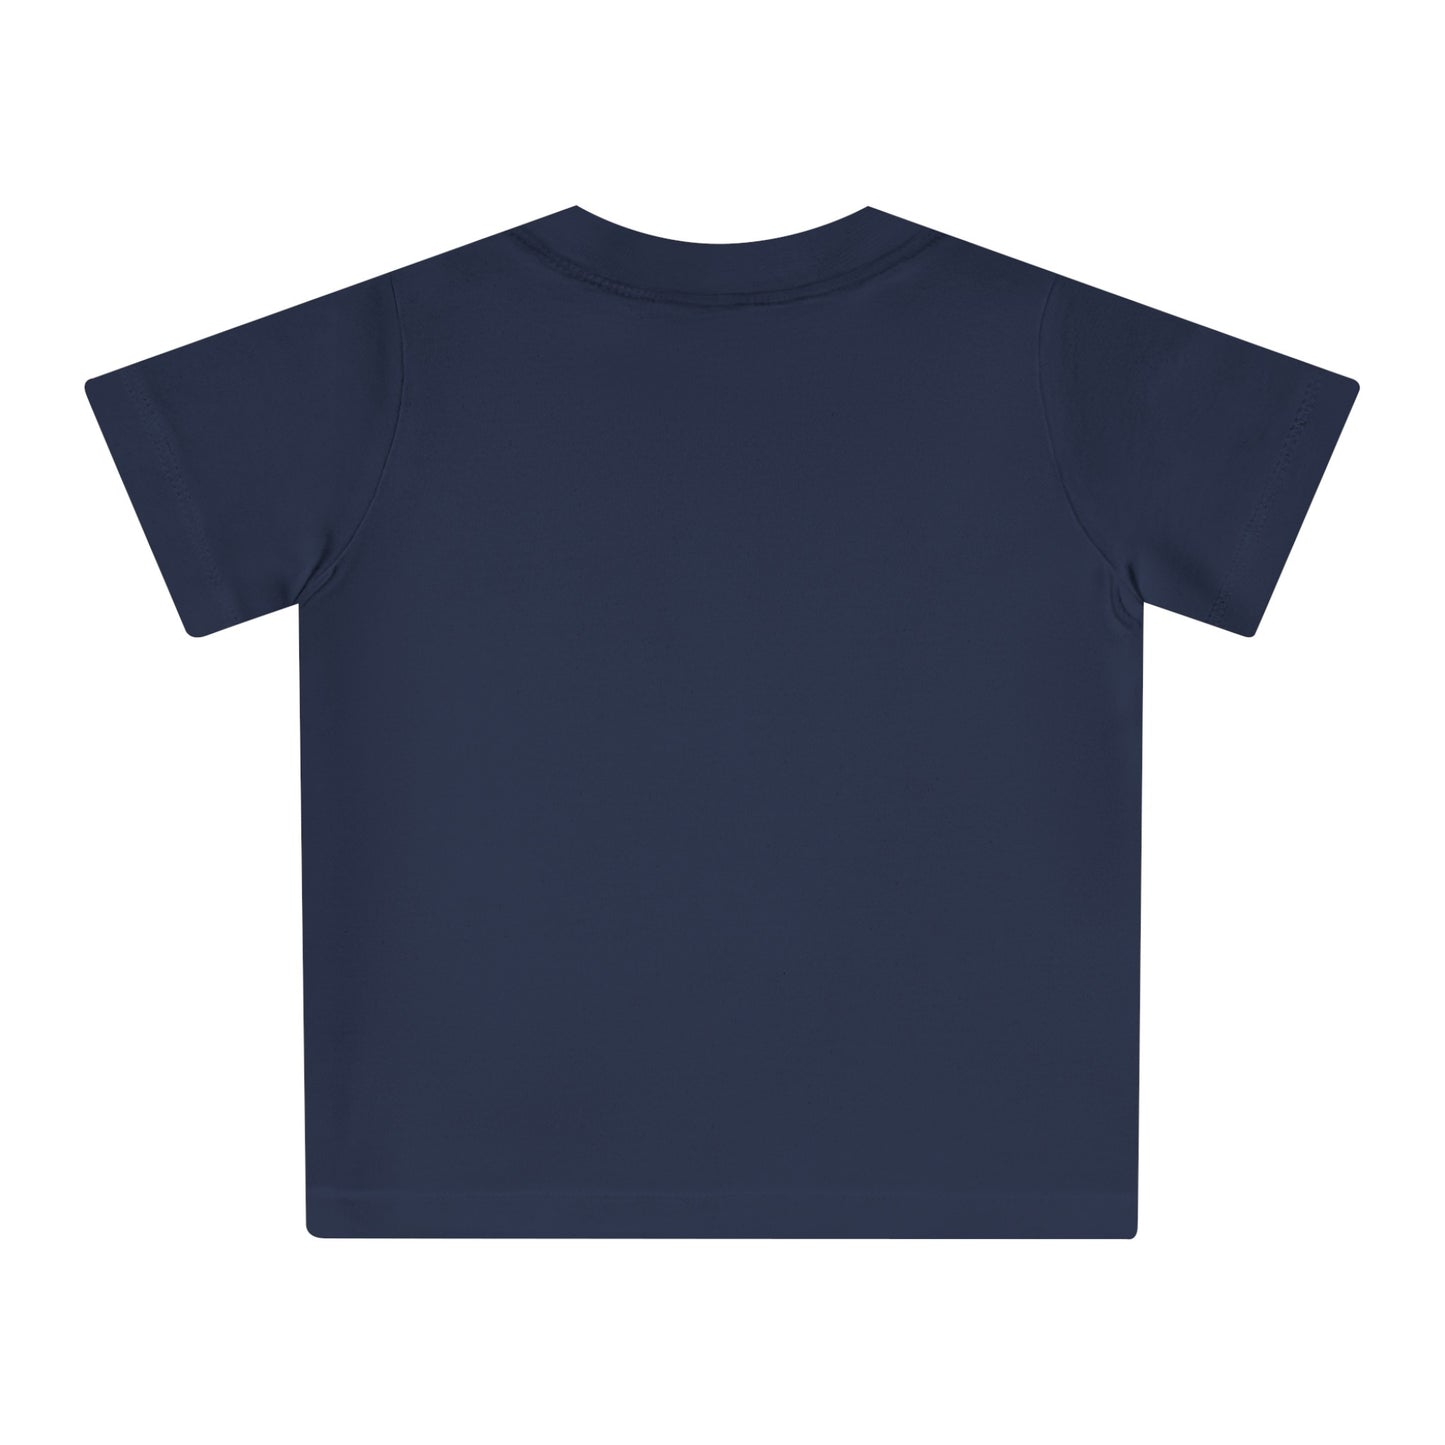 Eco-Friendly Baby Kids Retro T-Shirt 0-3yrs